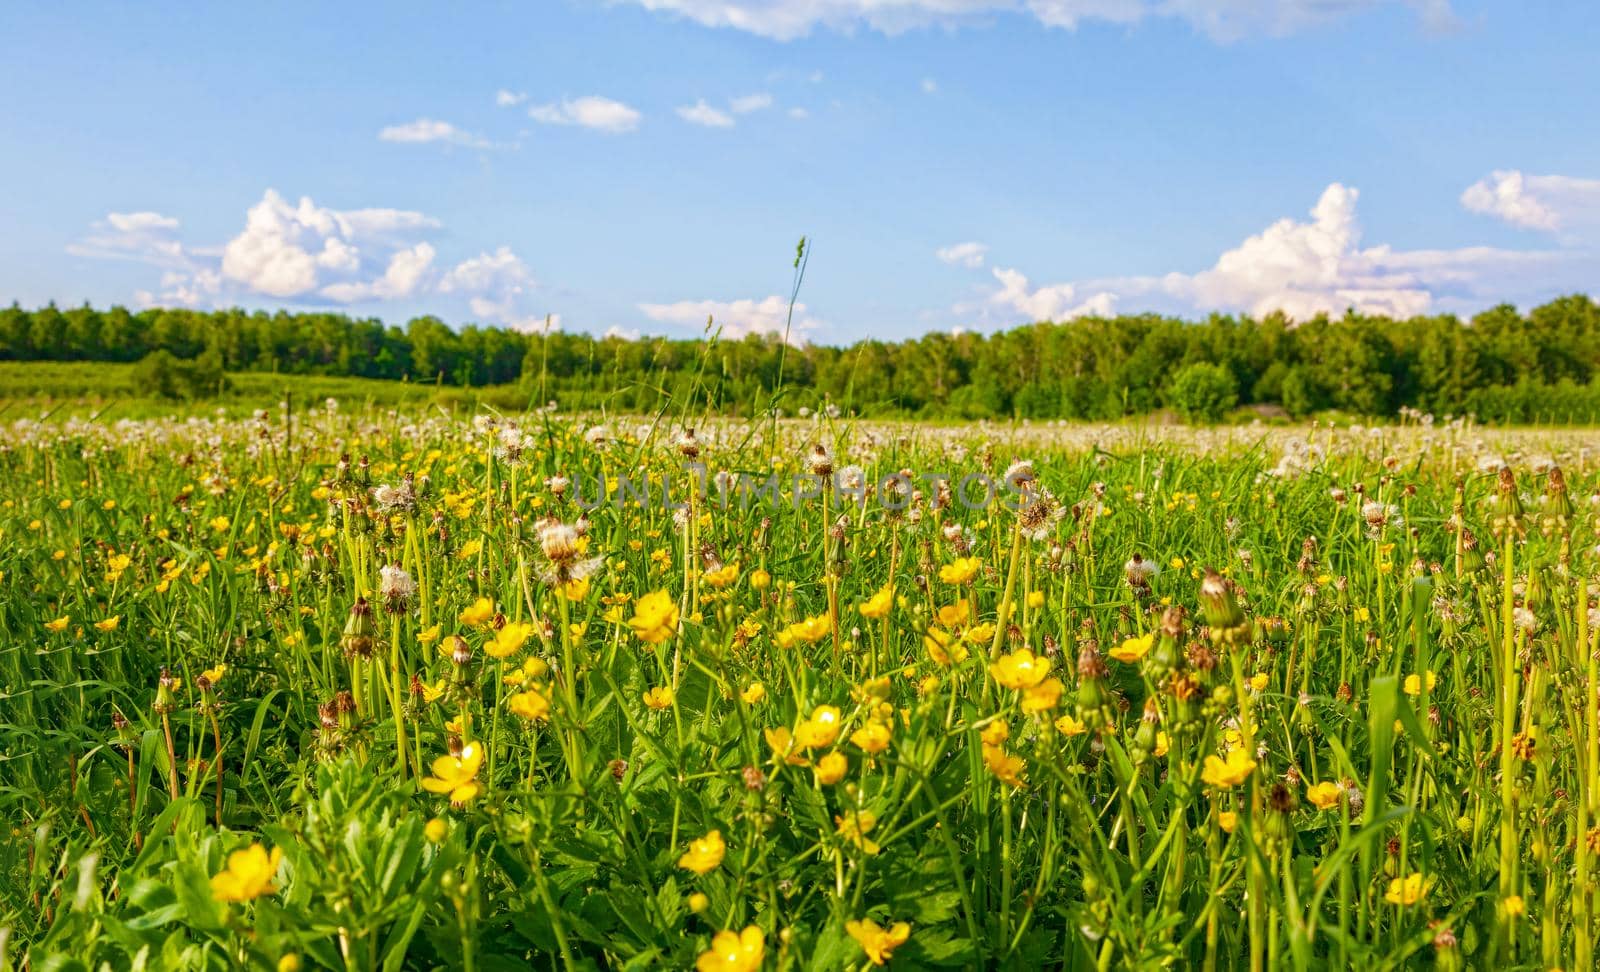 Bright flowers of a yellow dandelion in a field. by kolesnikov_studio